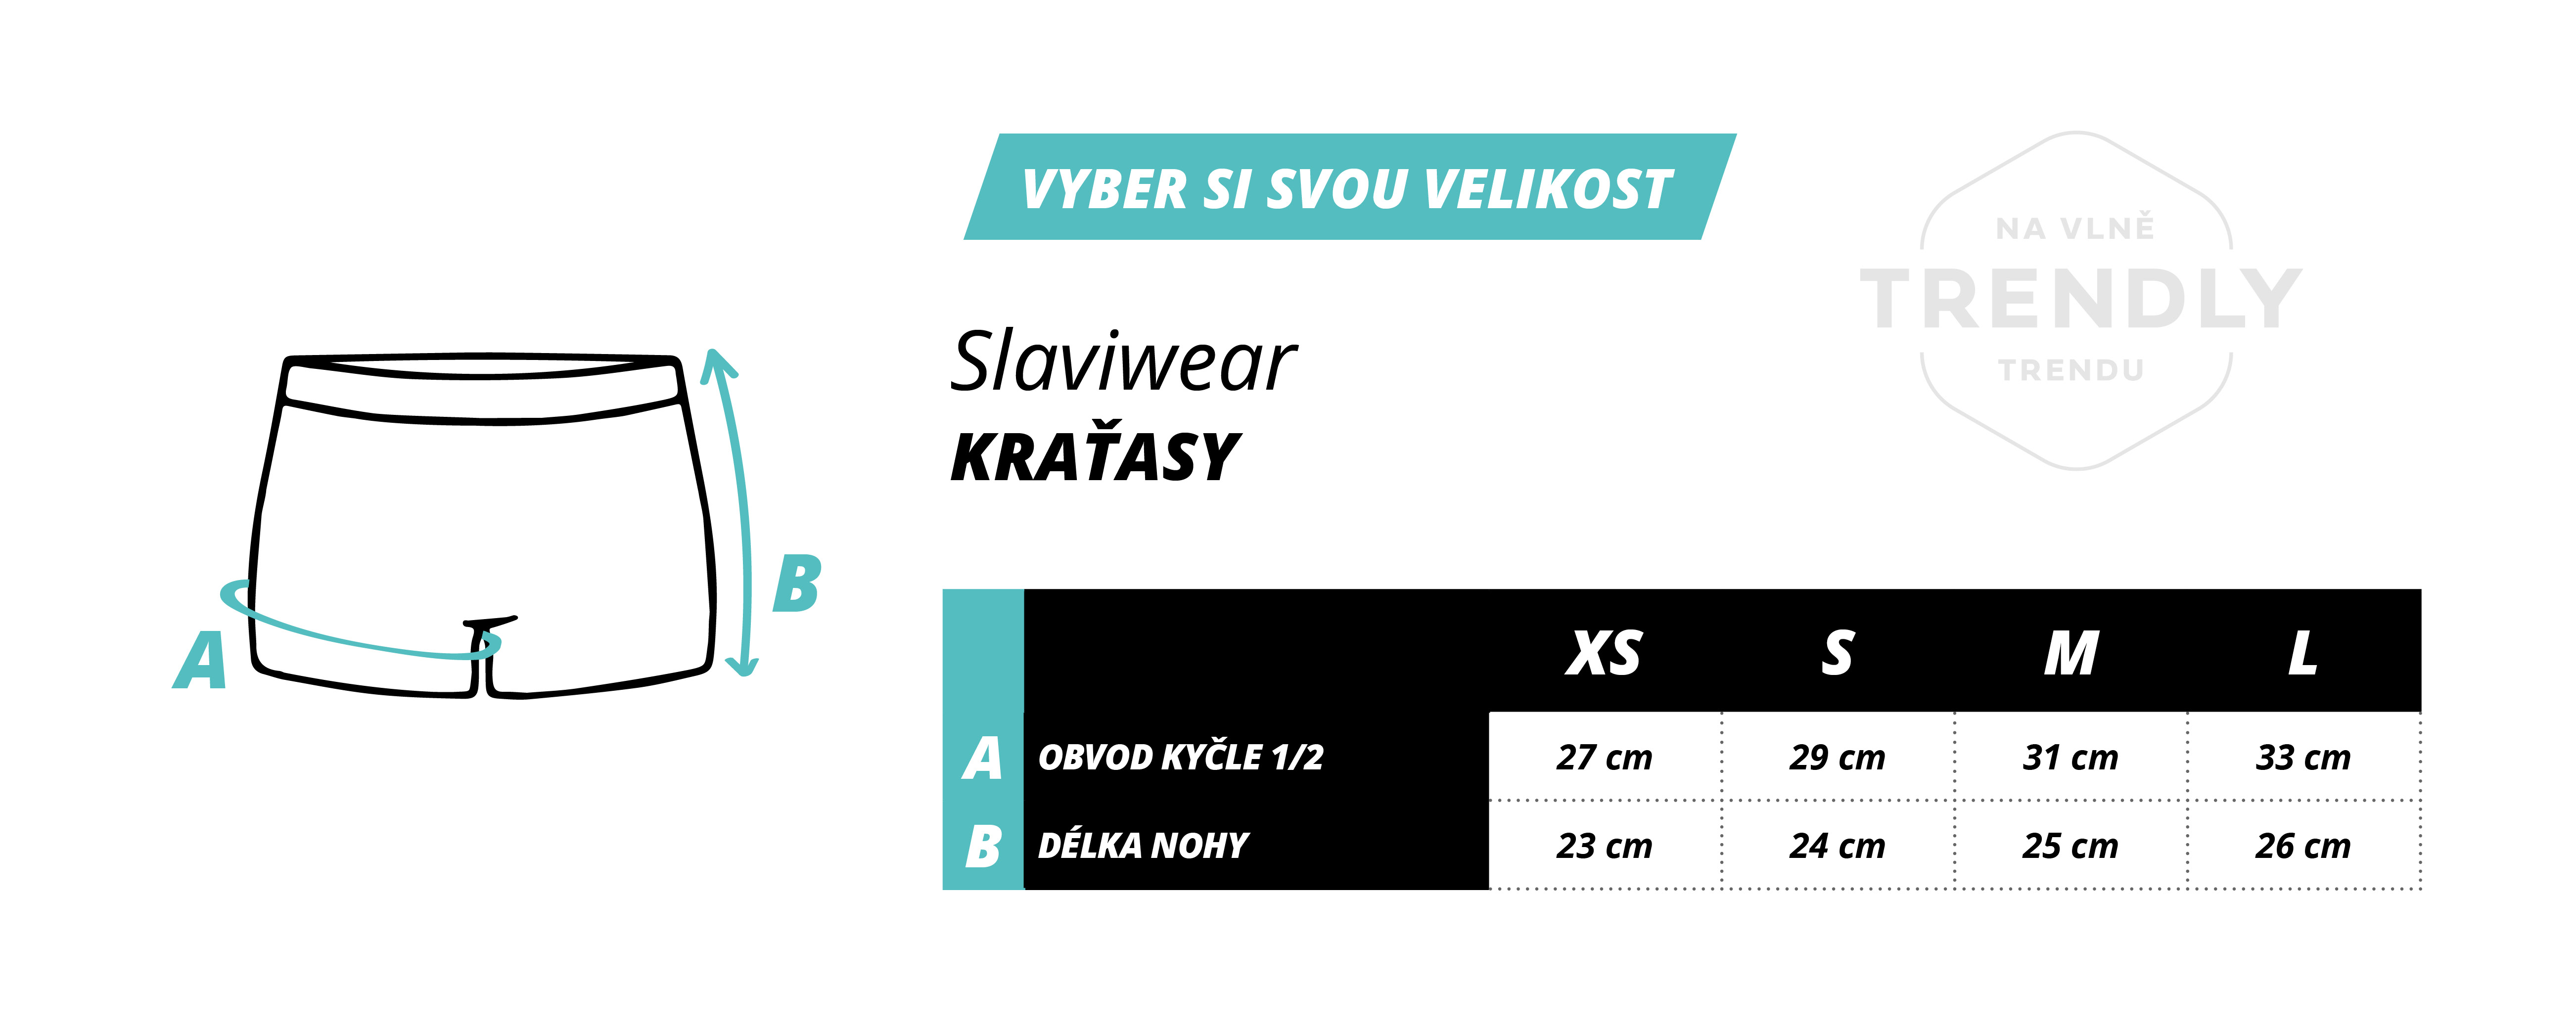 trendly_velikosti_krat_asy_slaviwear